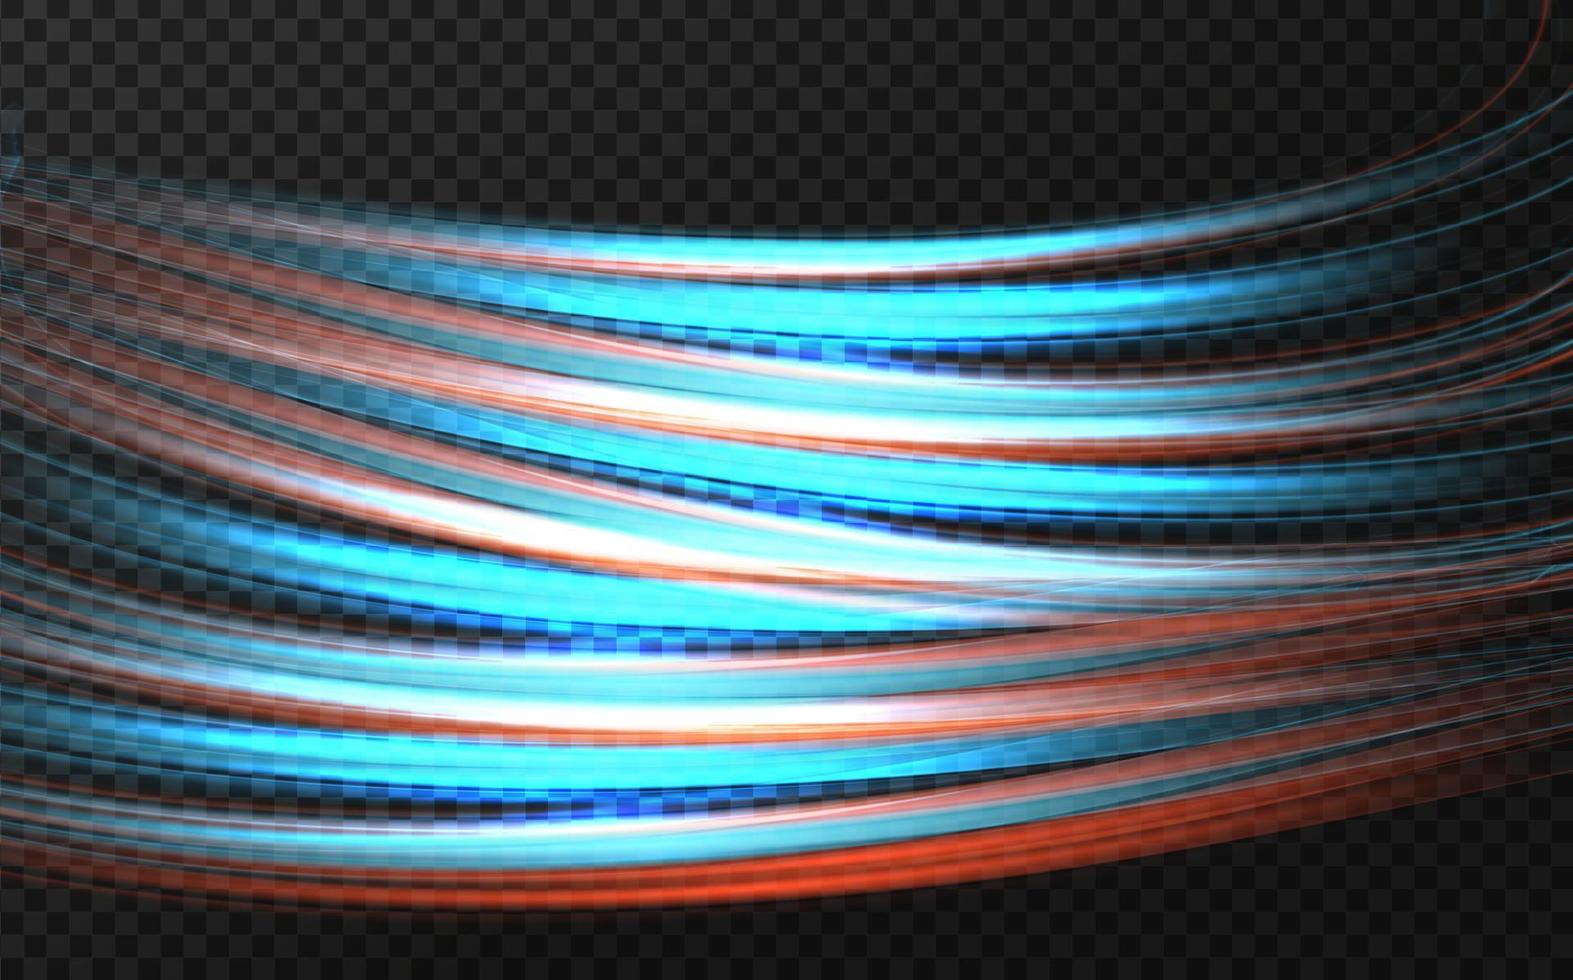 forma luminosa de neón en forma de ola o giro en la carretera. líneas curvas suaves con un efecto de luz mágica. alta velocidad en senderos nocturnos de automóviles. vector